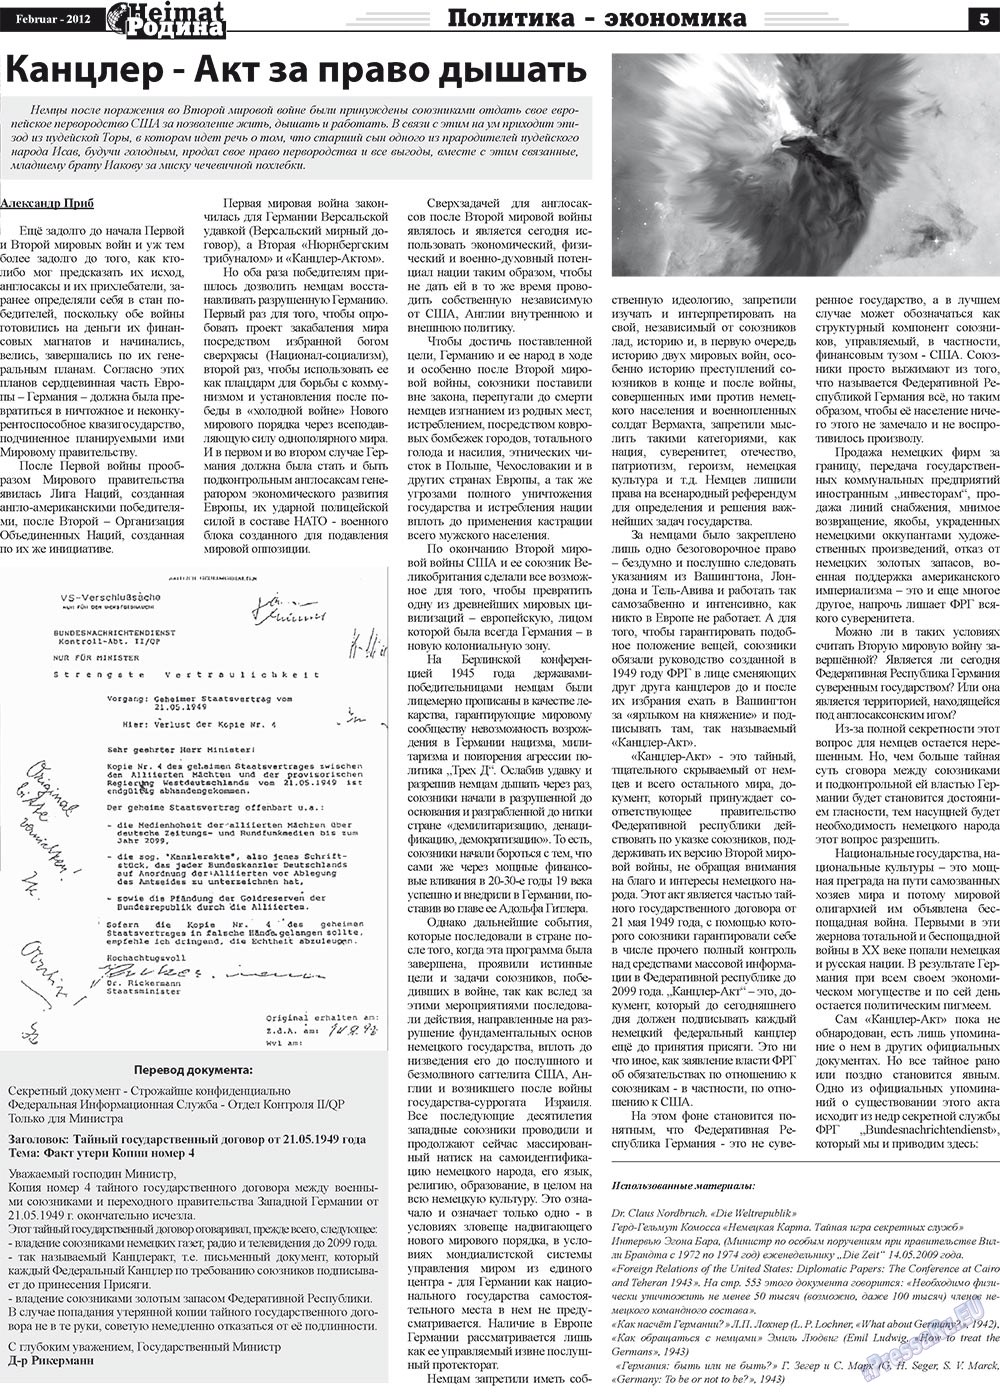 Heimat-Родина (газета). 2012 год, номер 2, стр. 5